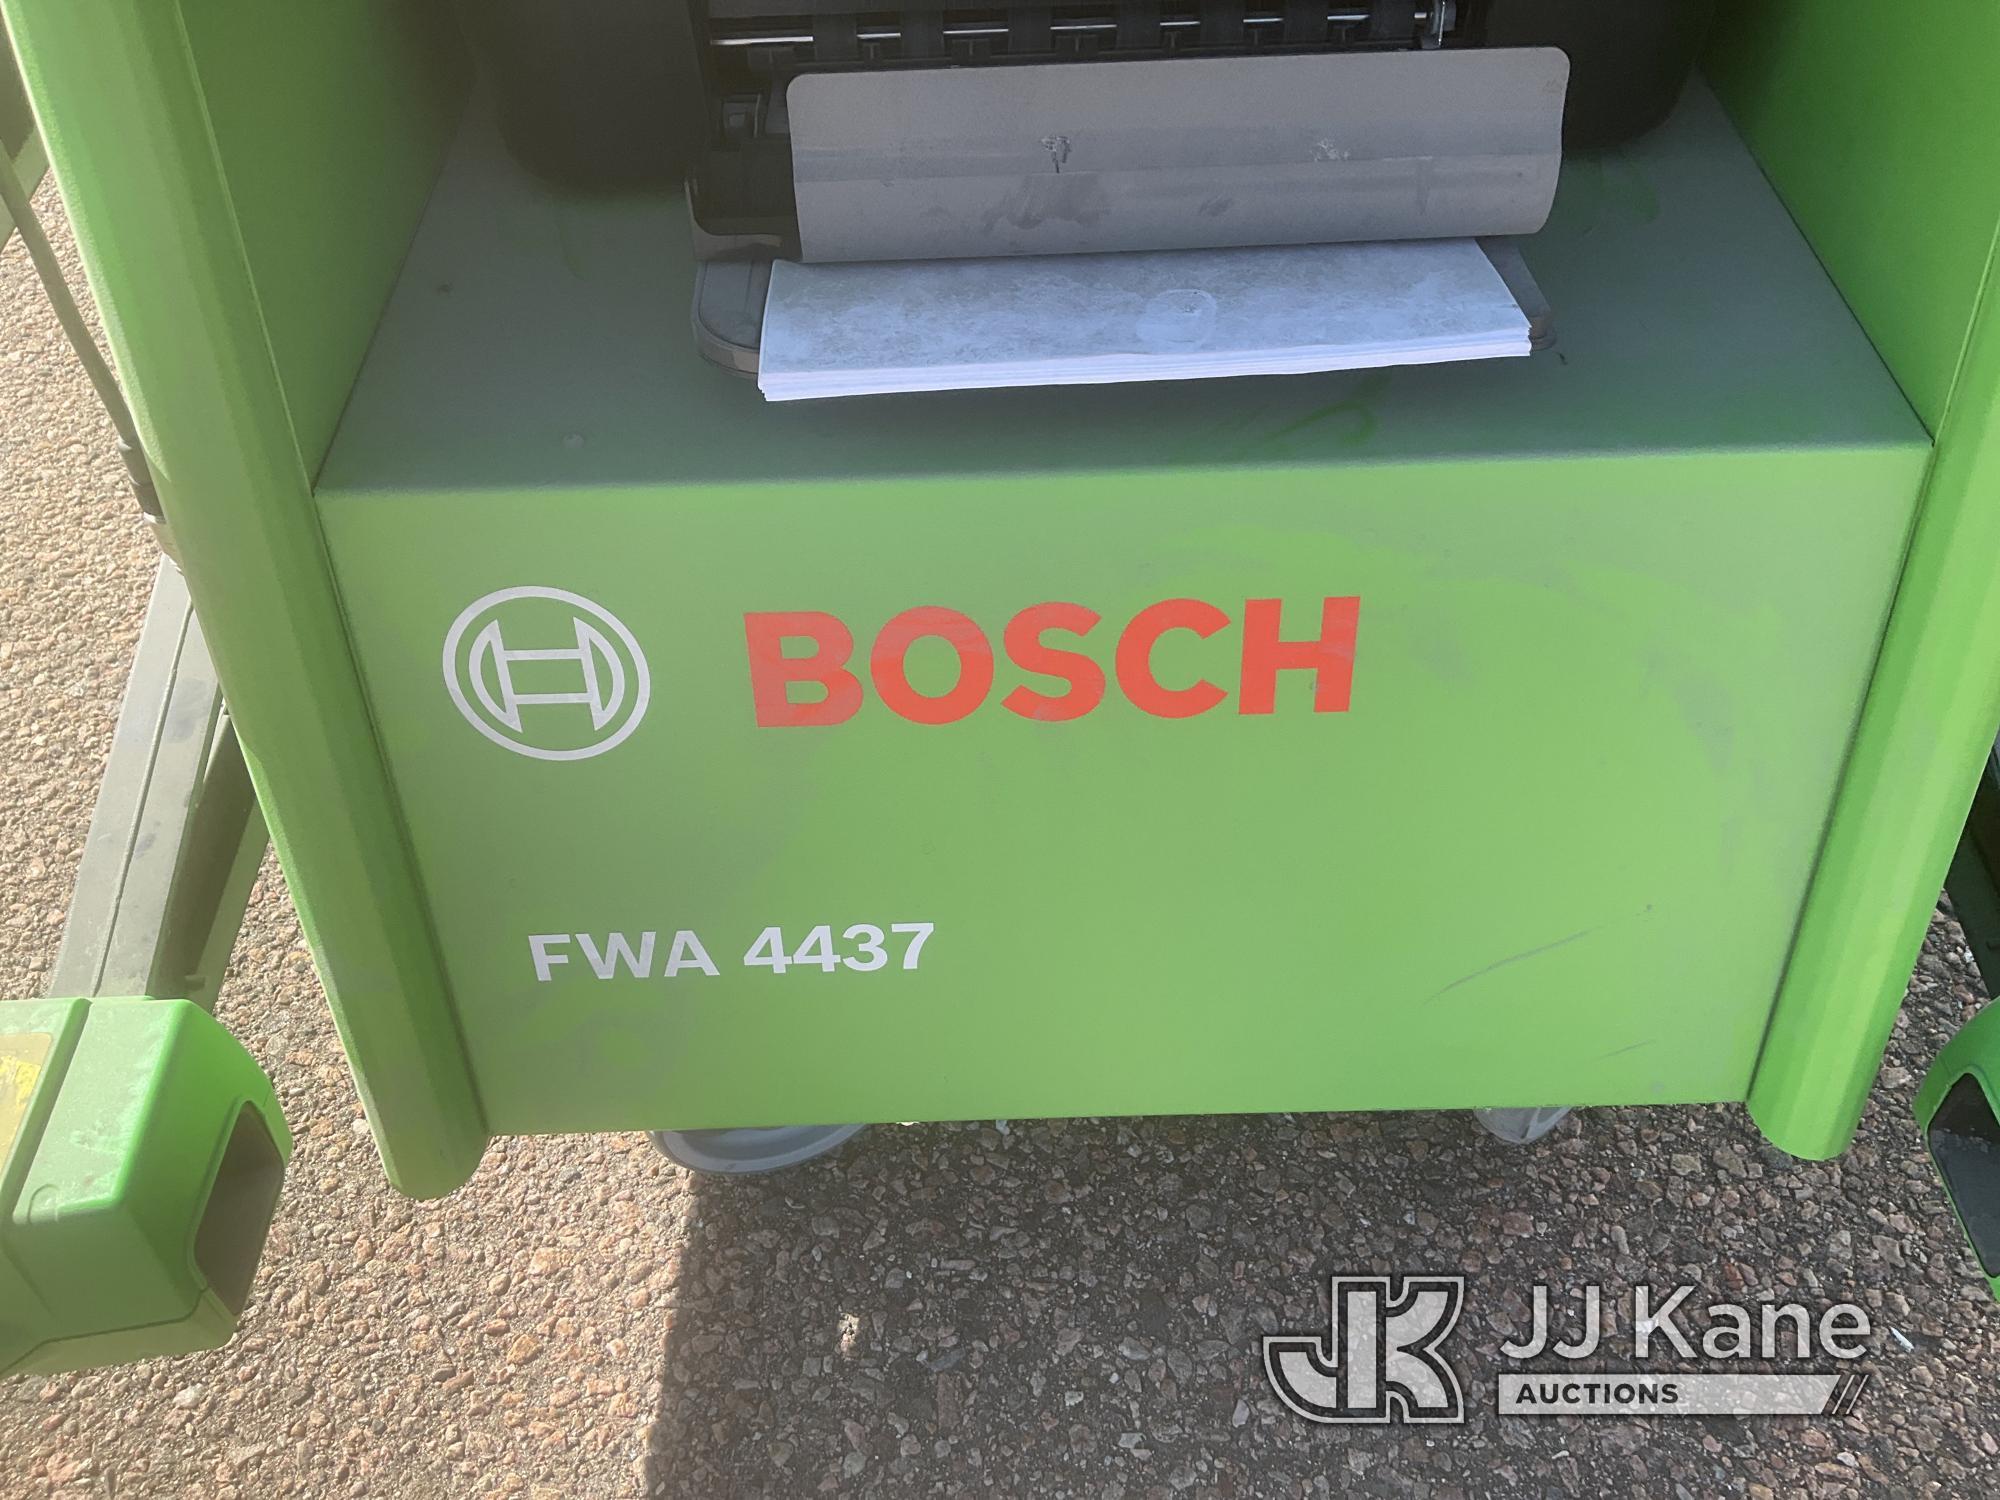 (Castle Rock, CO) Bosch Model FWA 4437 Wheel Alignment Machine Seller States: Runs & Operates